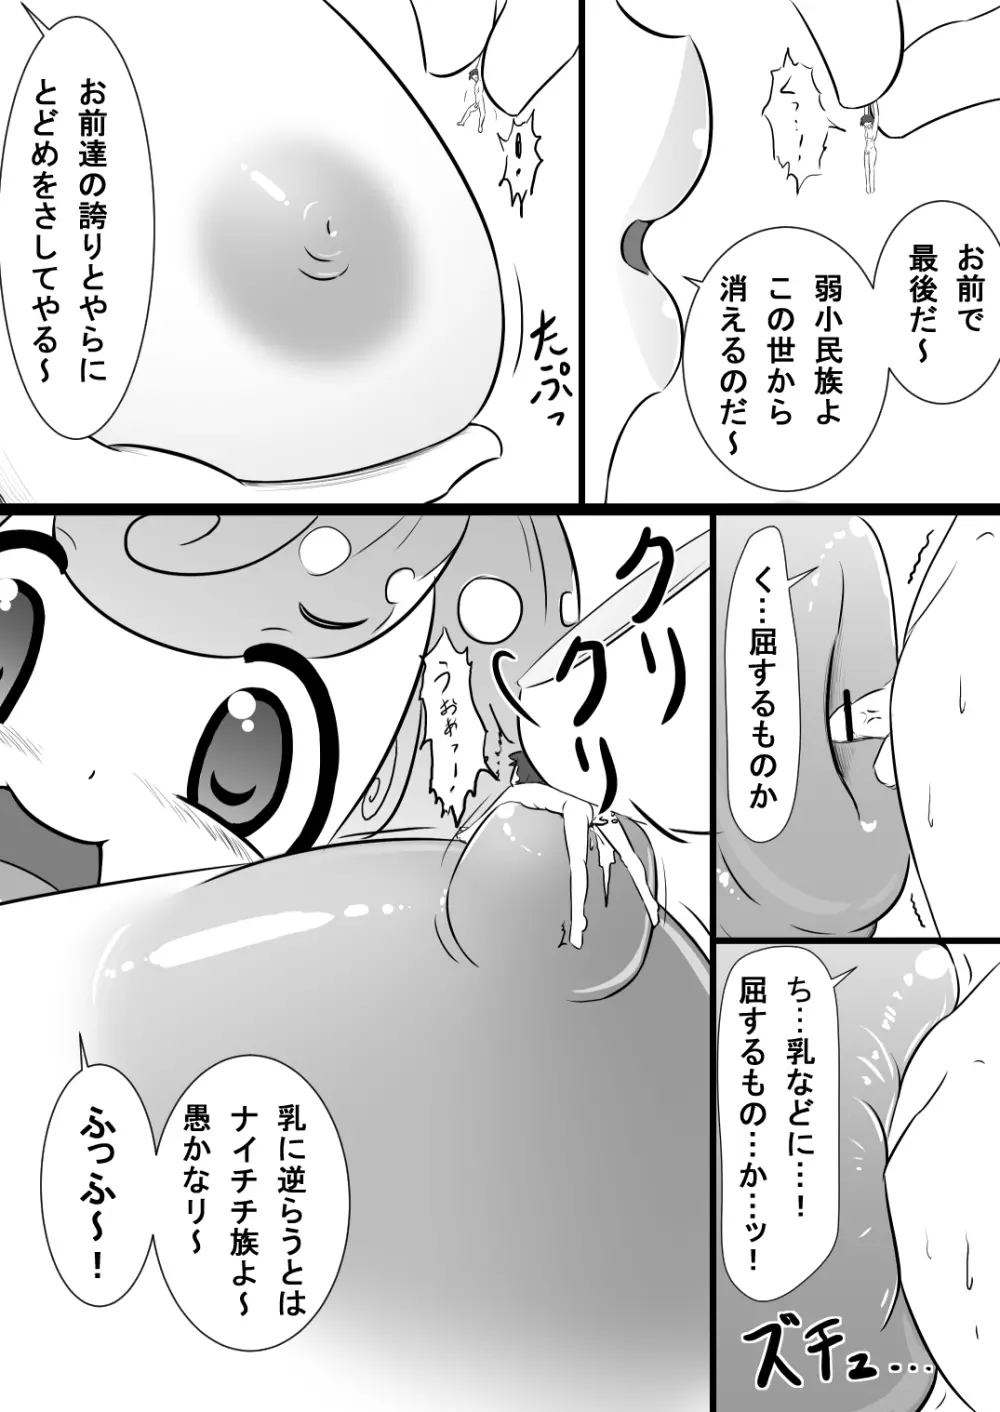 Rakugaki Manga 5 3ページ